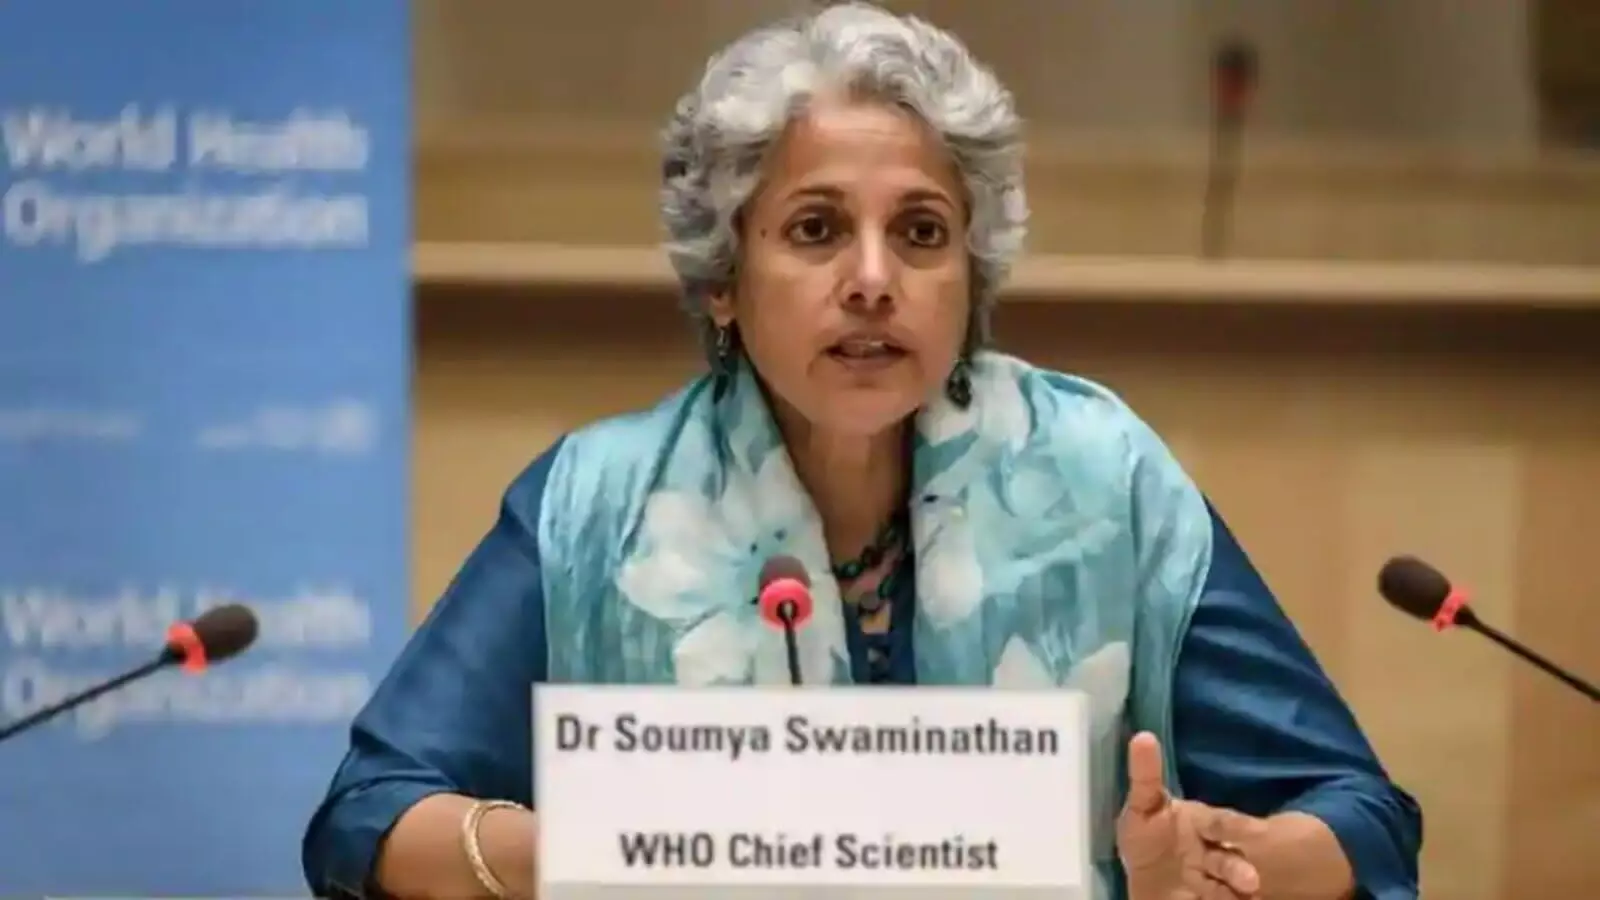 लॉकडाउन से खतराः WHO की वैज्ञानिक की चेतावनी, भयानक होंगे परिणाम